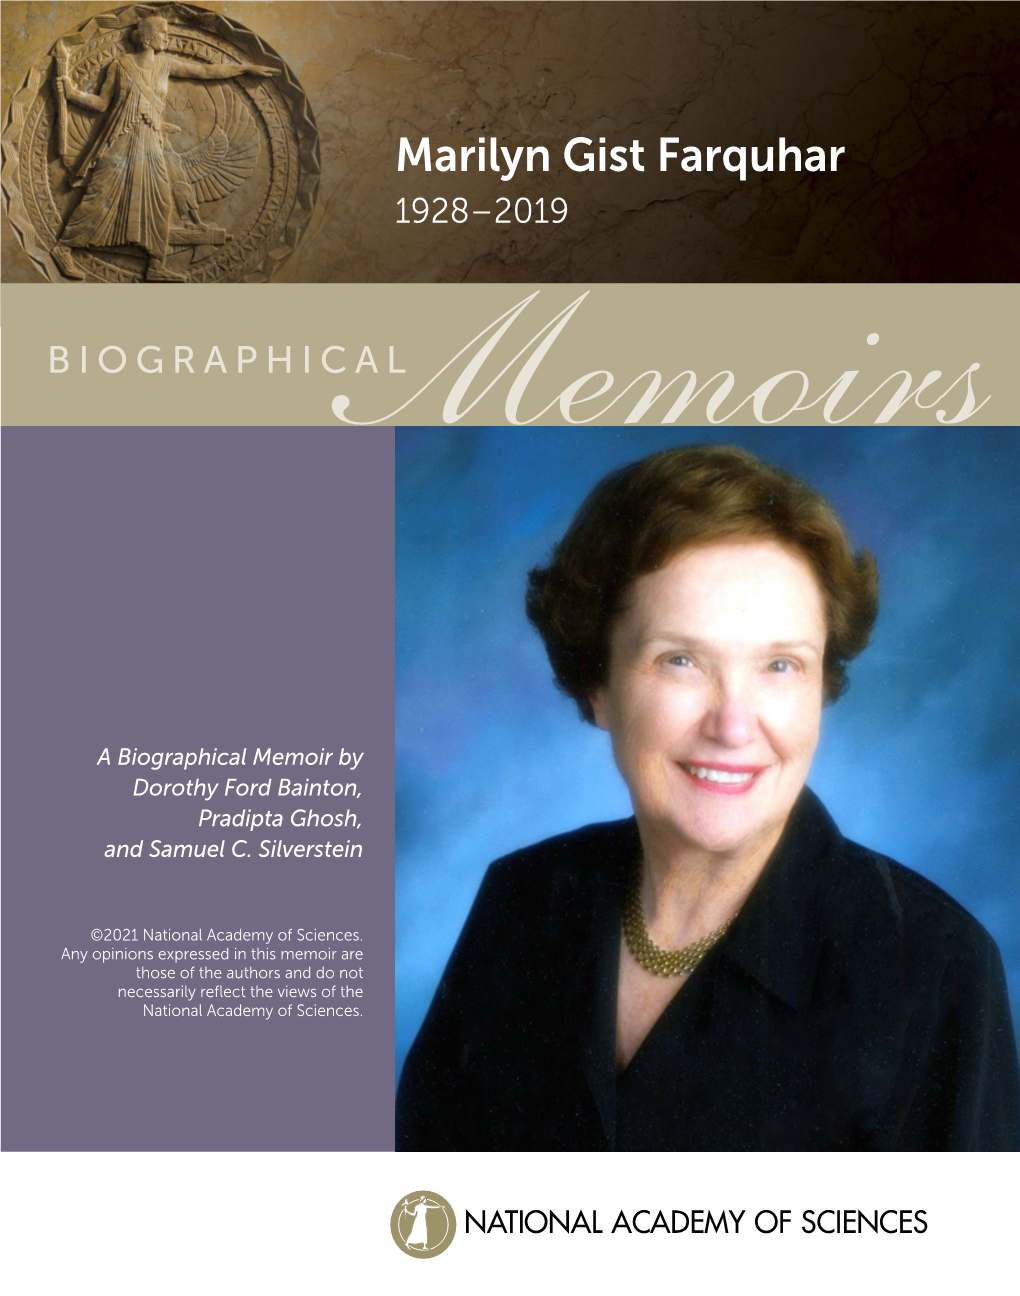 Marilyn Gist Farquhar (1928-2019)